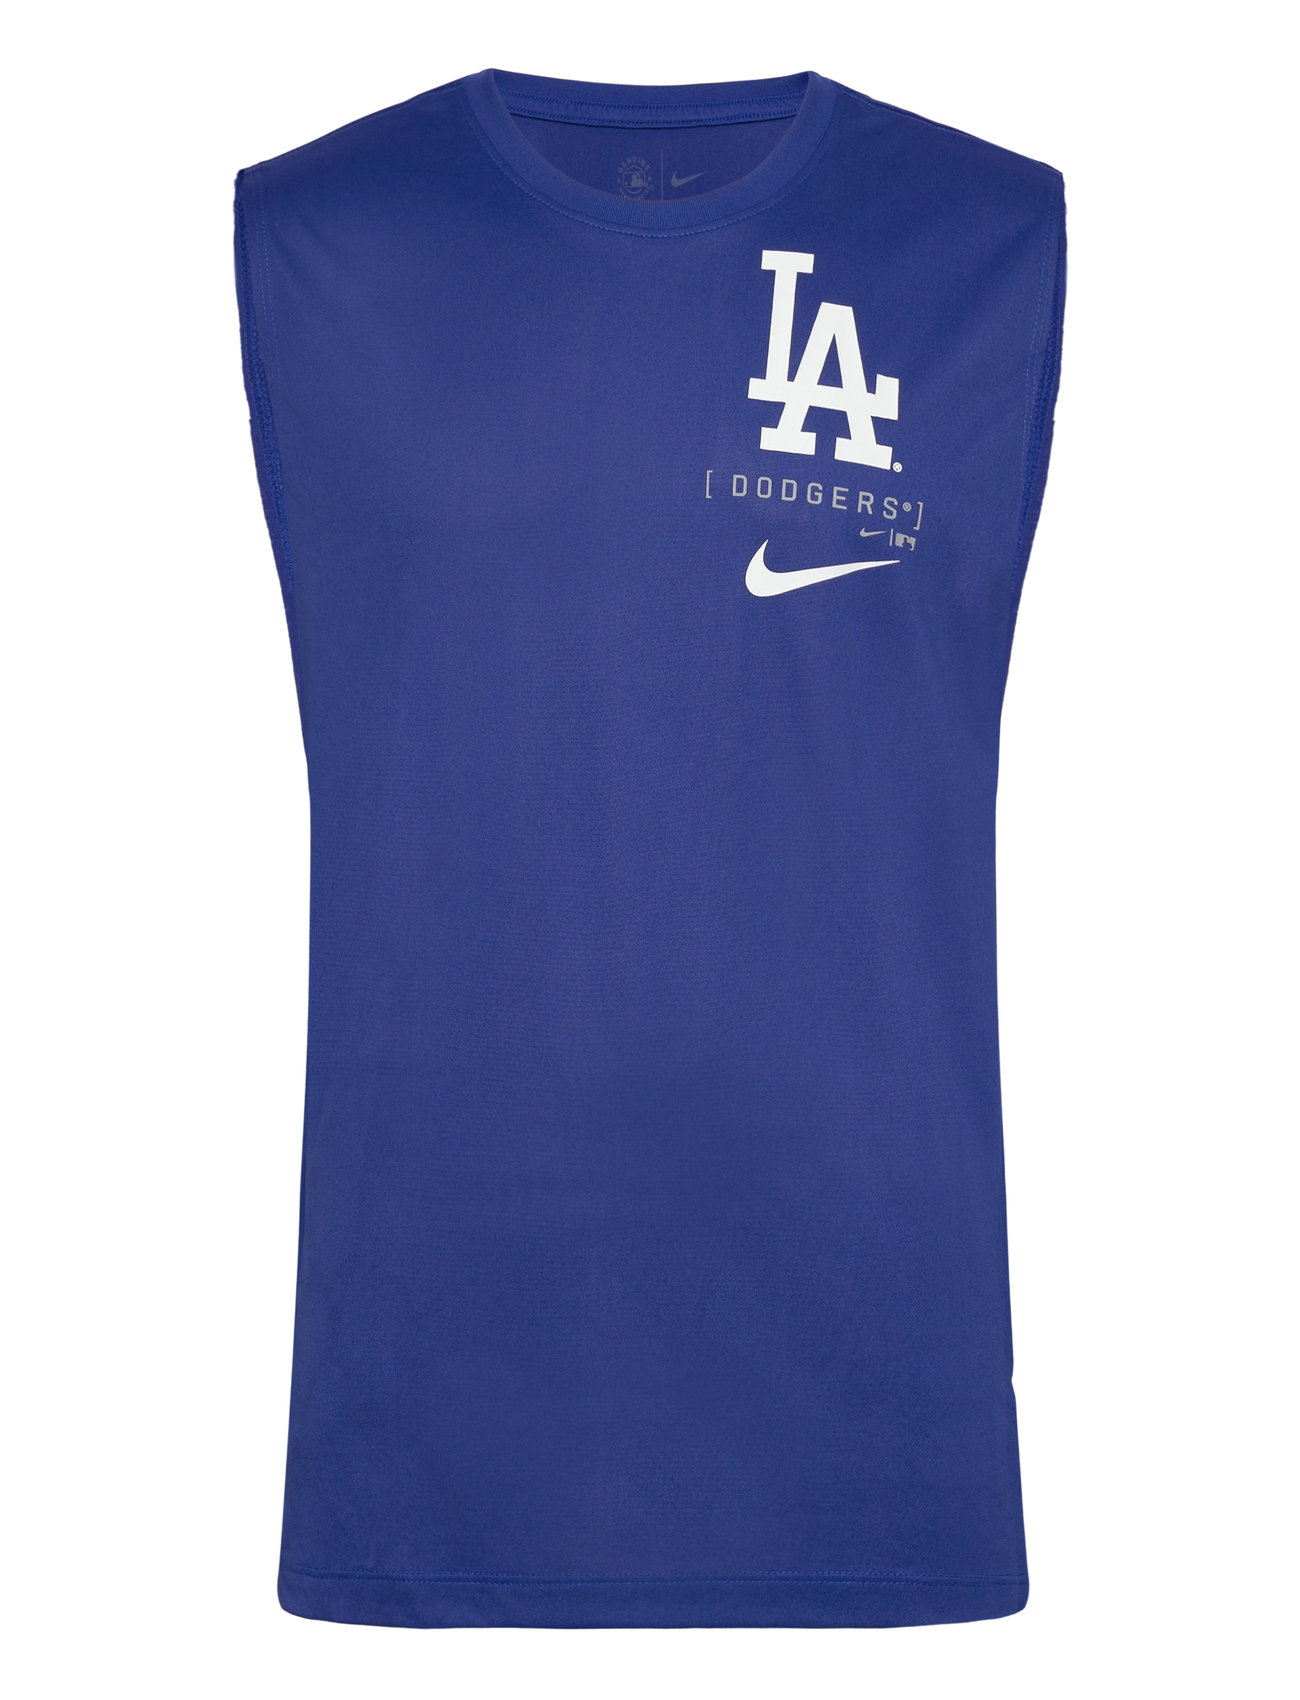 Los Angeles Dodgers Men's Nike Large Muscle Logo Tank Tops T-shirts Sleeveless Blue NIKE Fan Gear